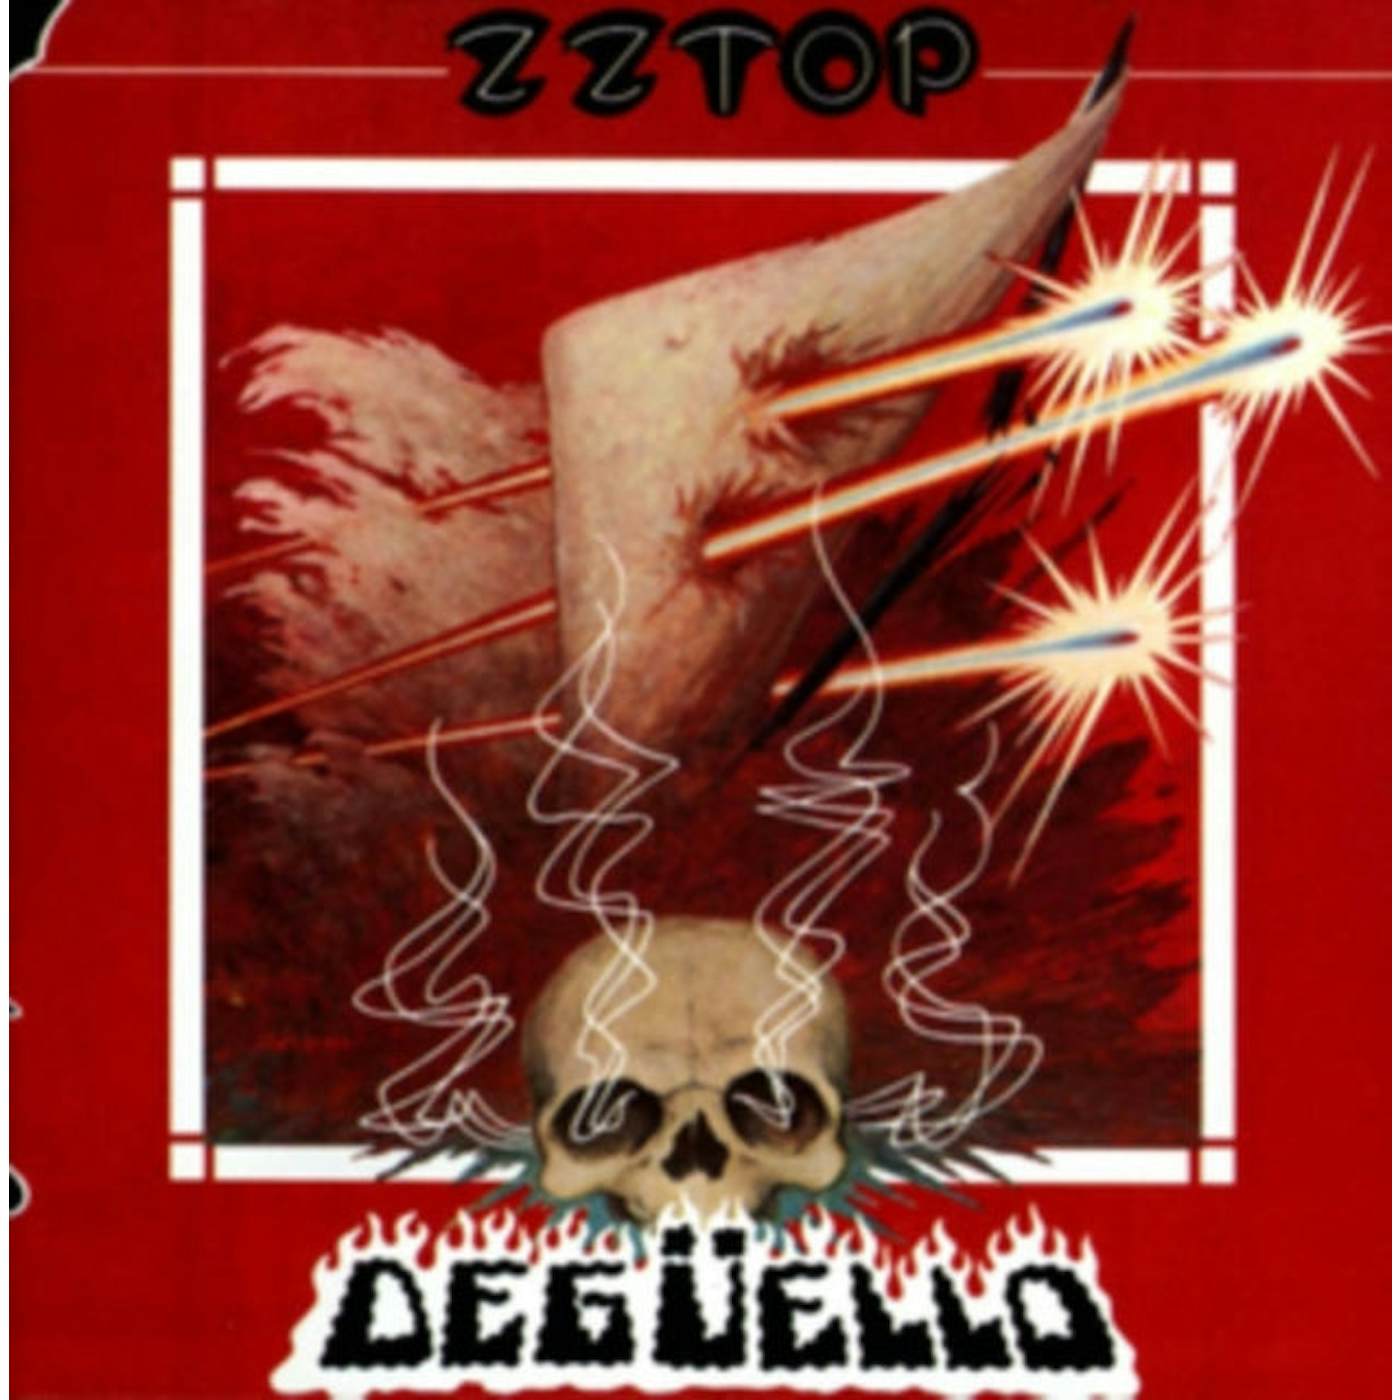 ZZ Top CD - Deguello